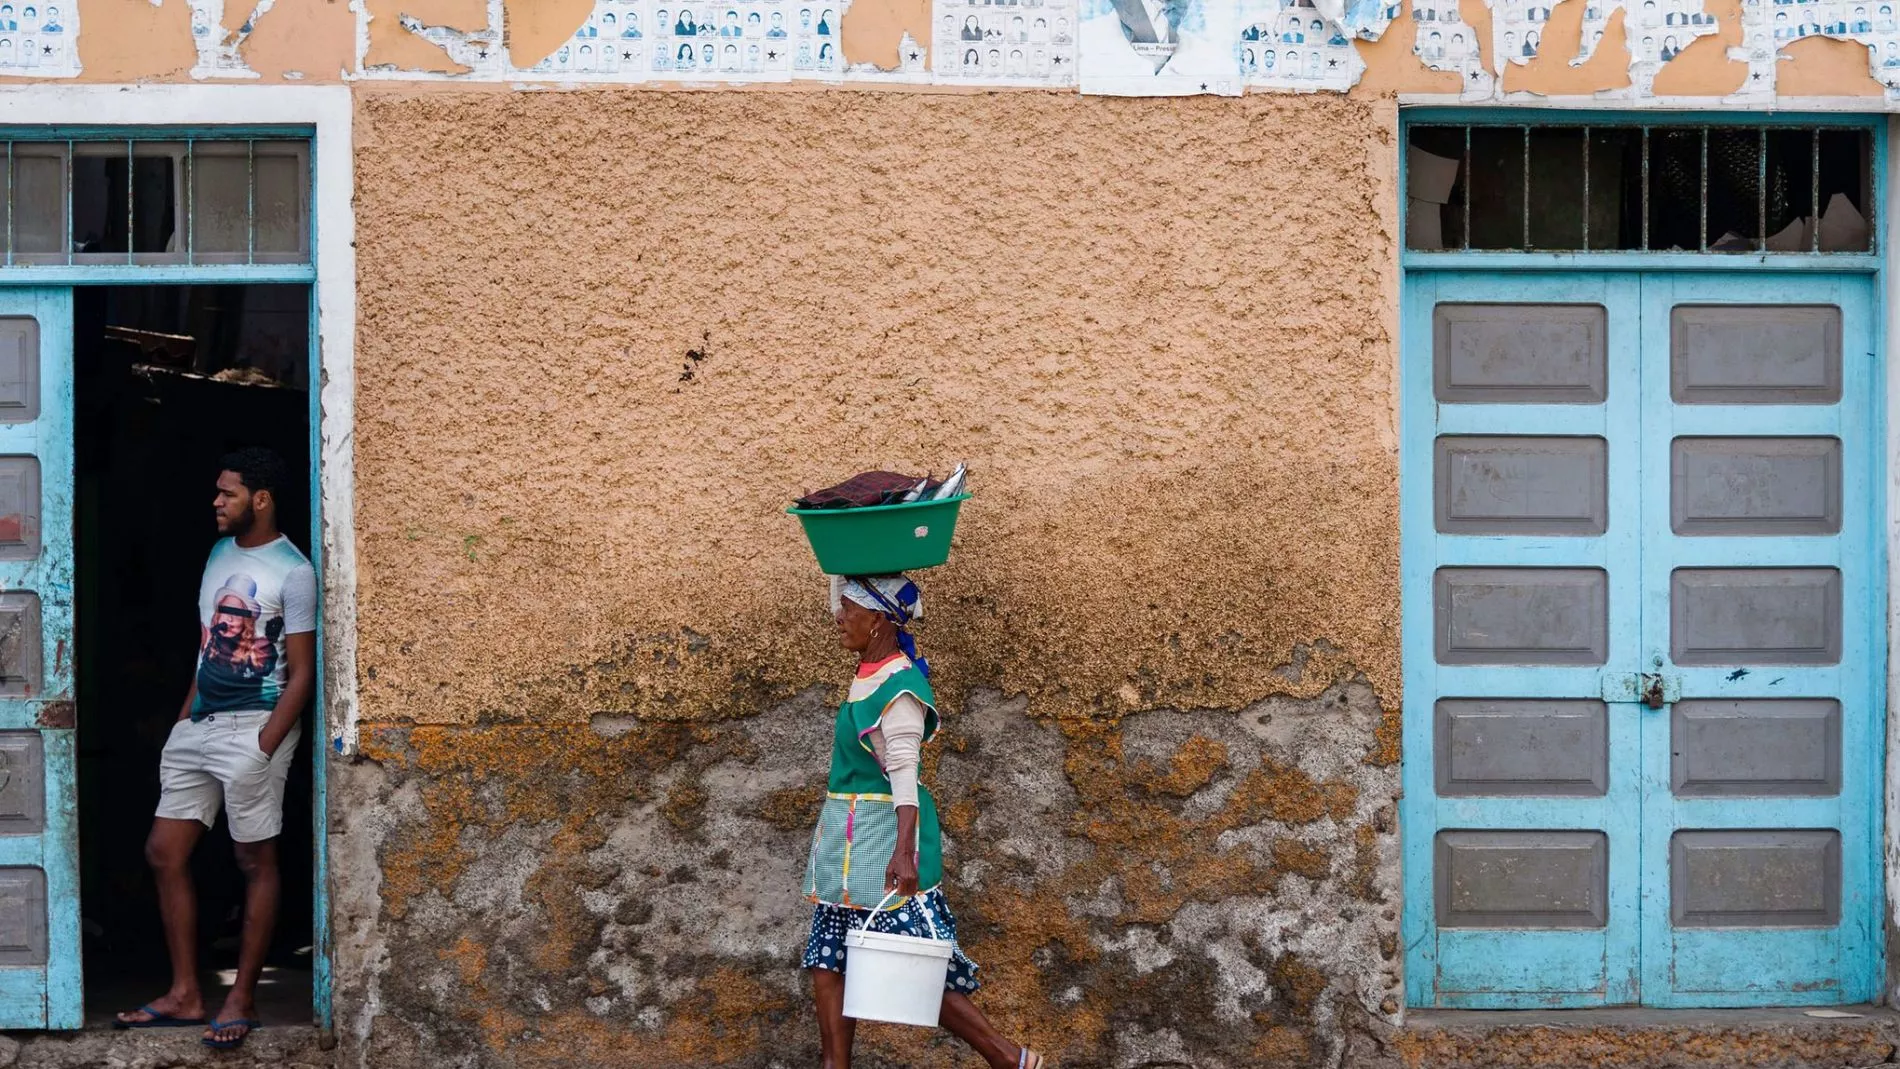 Das Leben auf den Kap Verden ist von Armut, aber auch von Lebensfreude geprägt